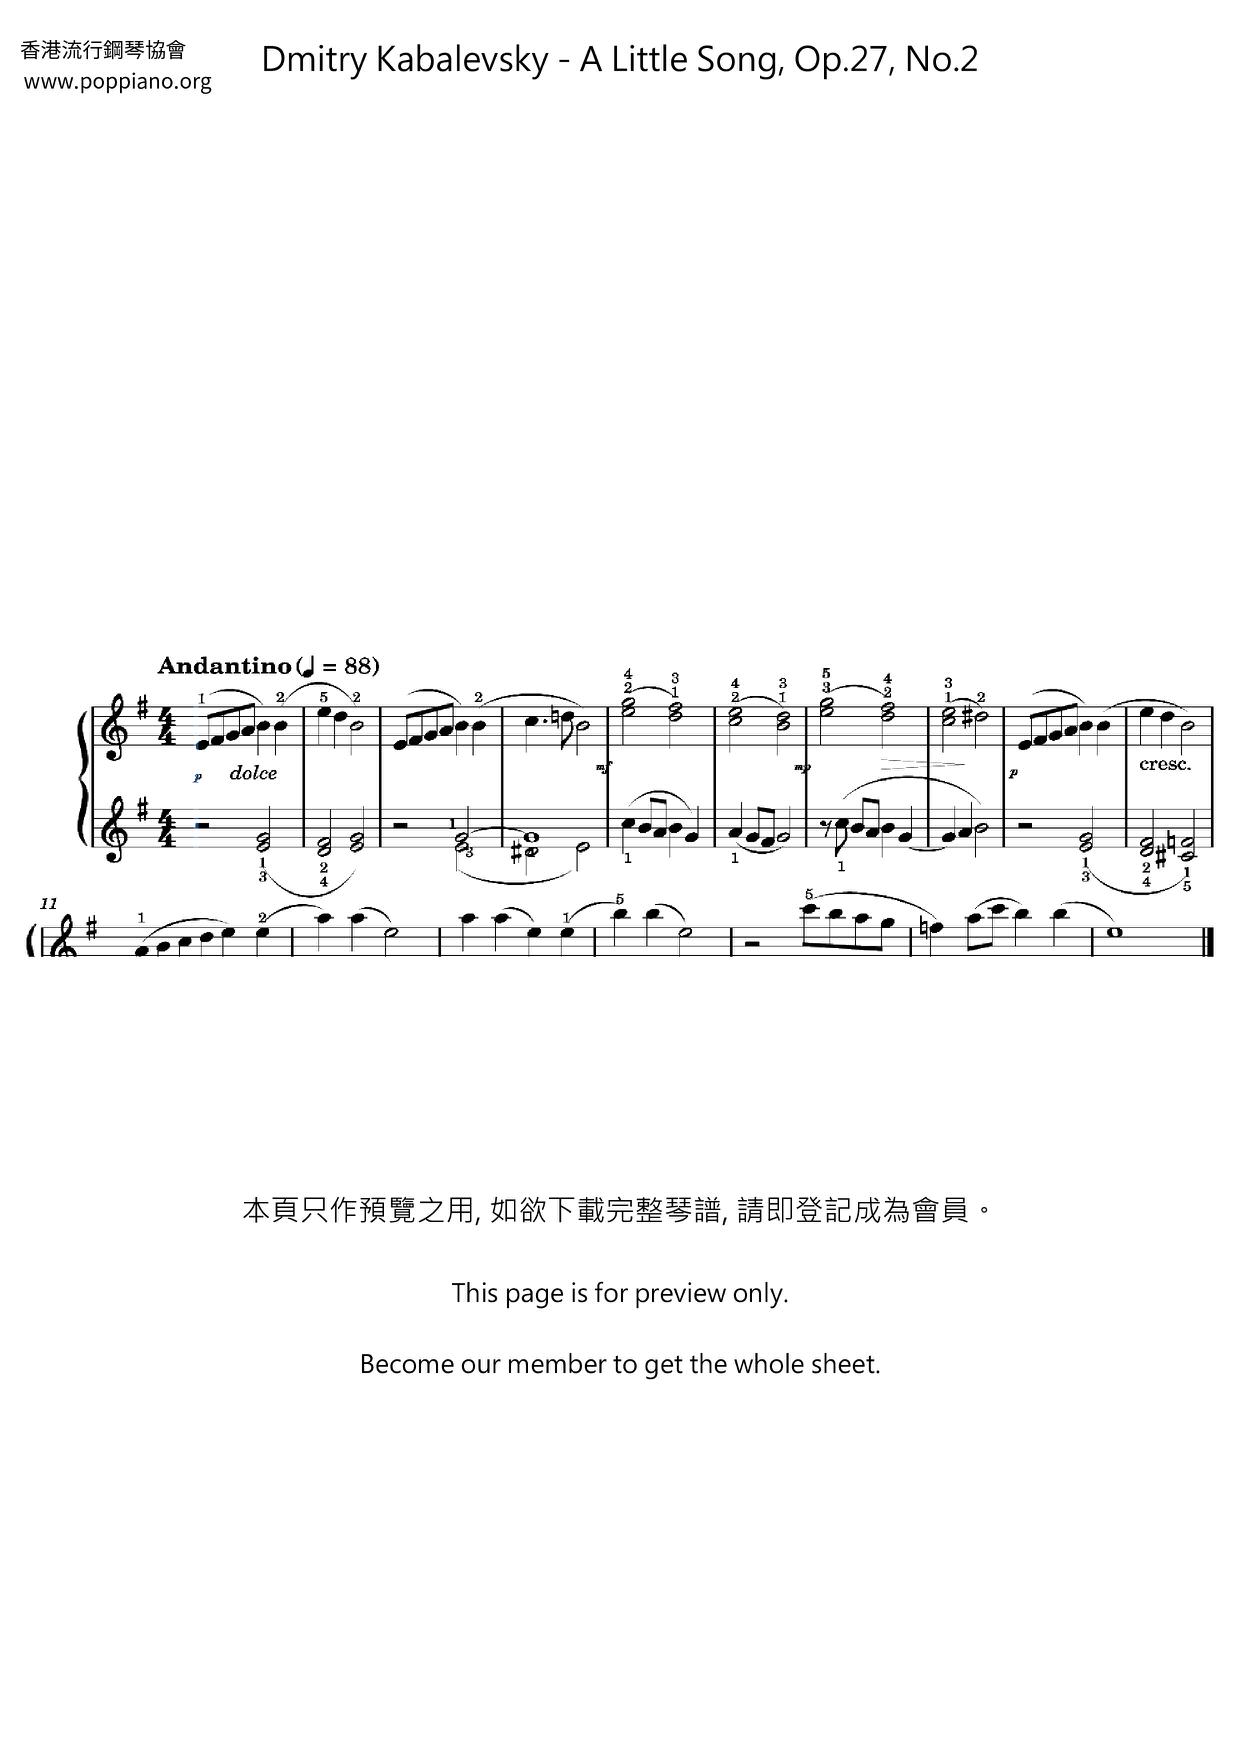 A Little Song, Op.27, No.2ピアノ譜